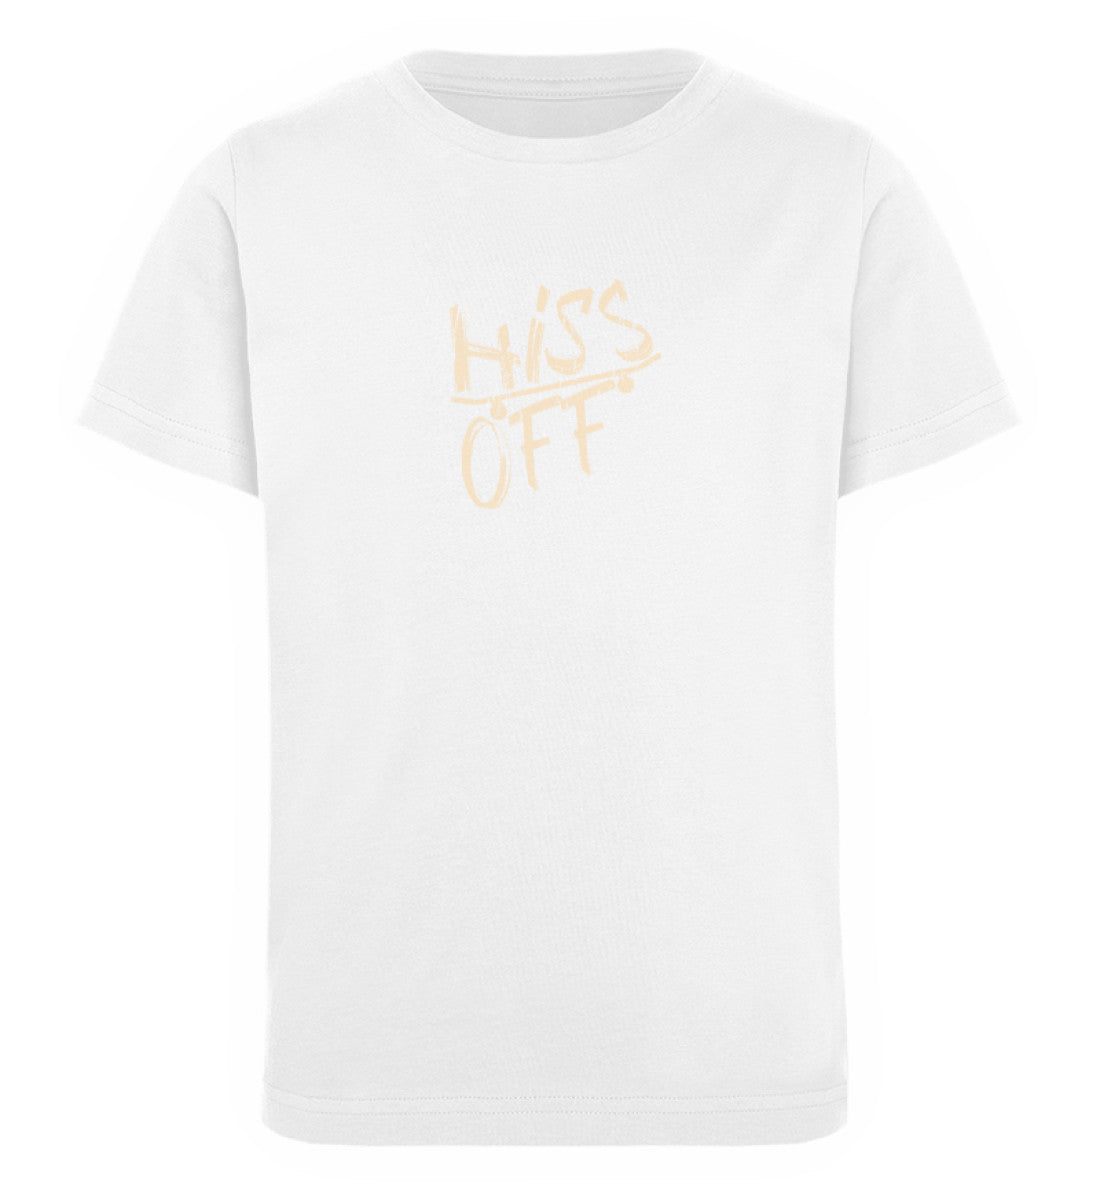 Weißes Kinder T-Shirt für Mädchen und Jungen bedruckt mit dem Design der Roger Rockawoo Kollektion Skateboard Hiss off